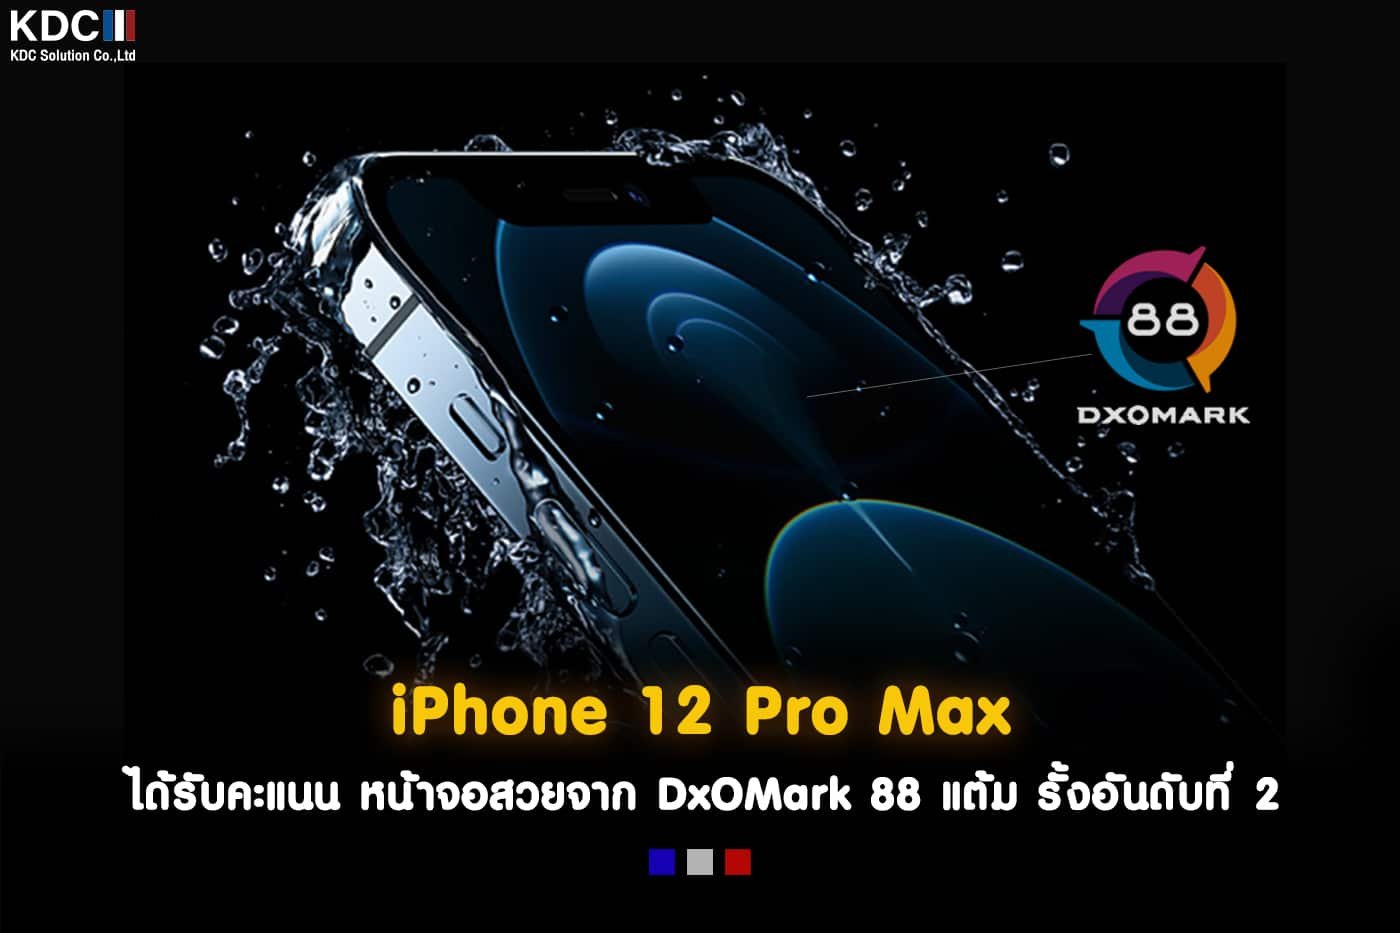 iphone 12 pro max amazon